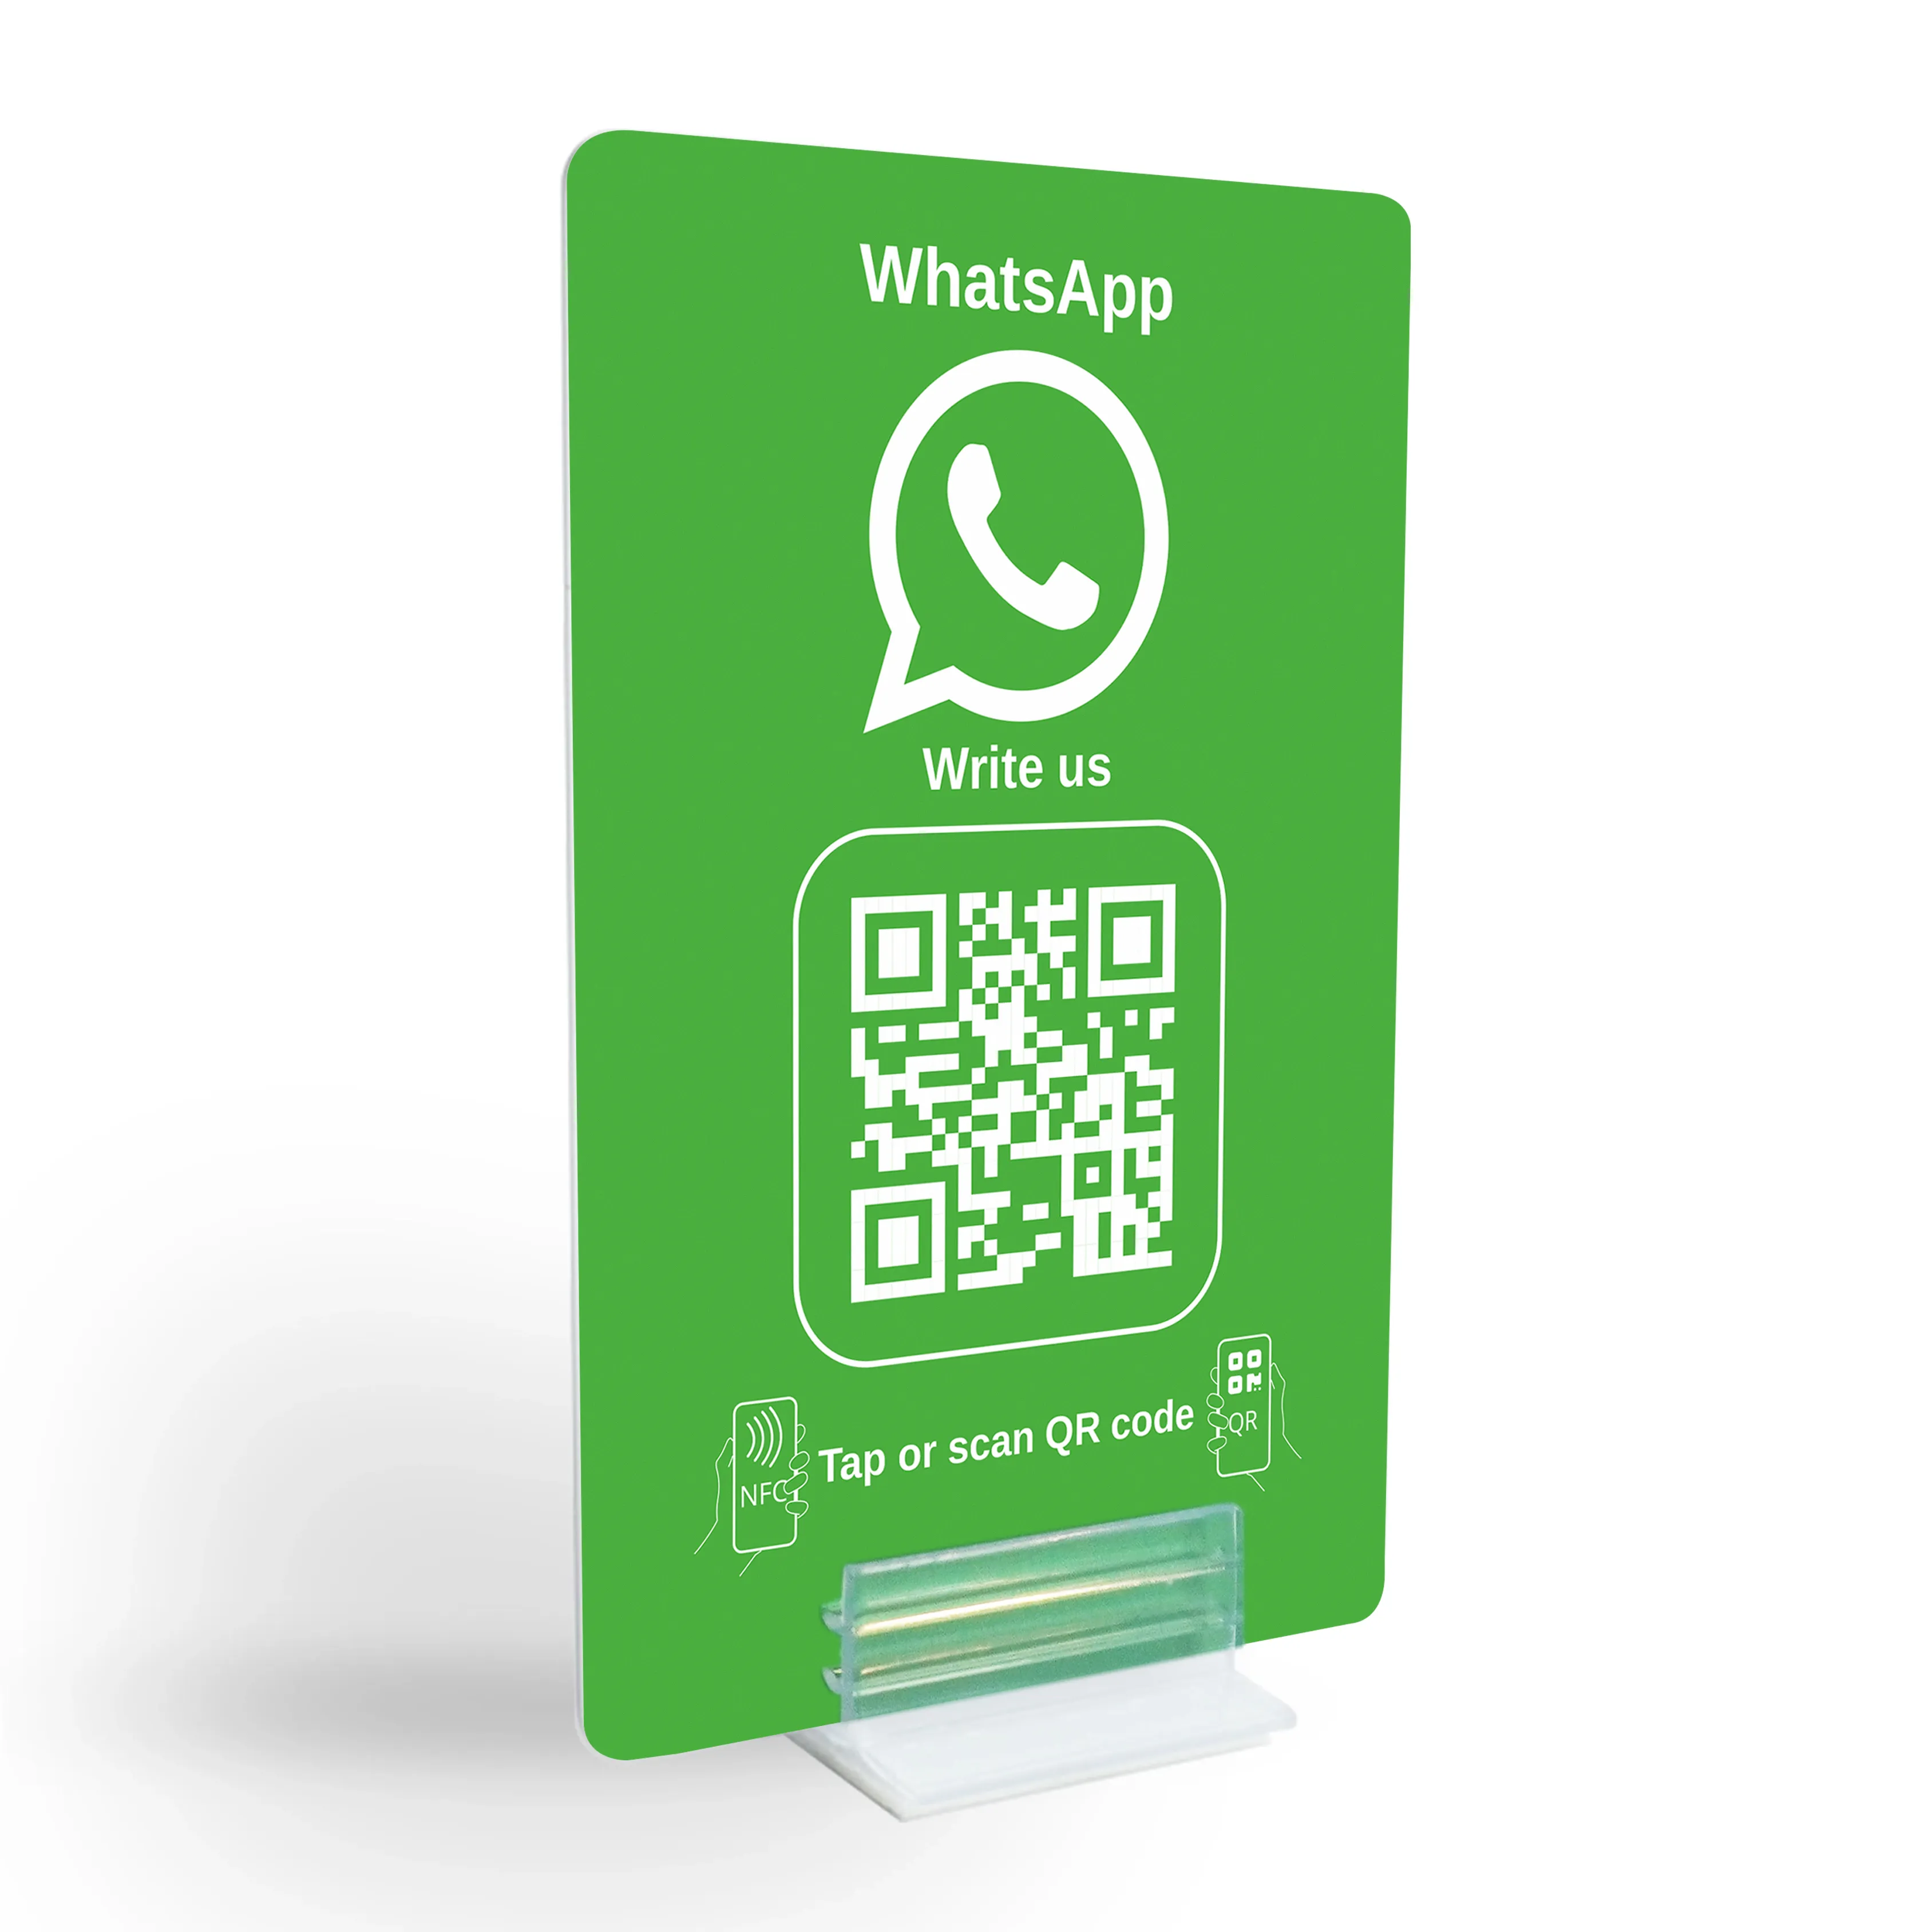 WhatsApp Direct Connect - Présentoir NFC/code QR pour un contact instantané avec le client